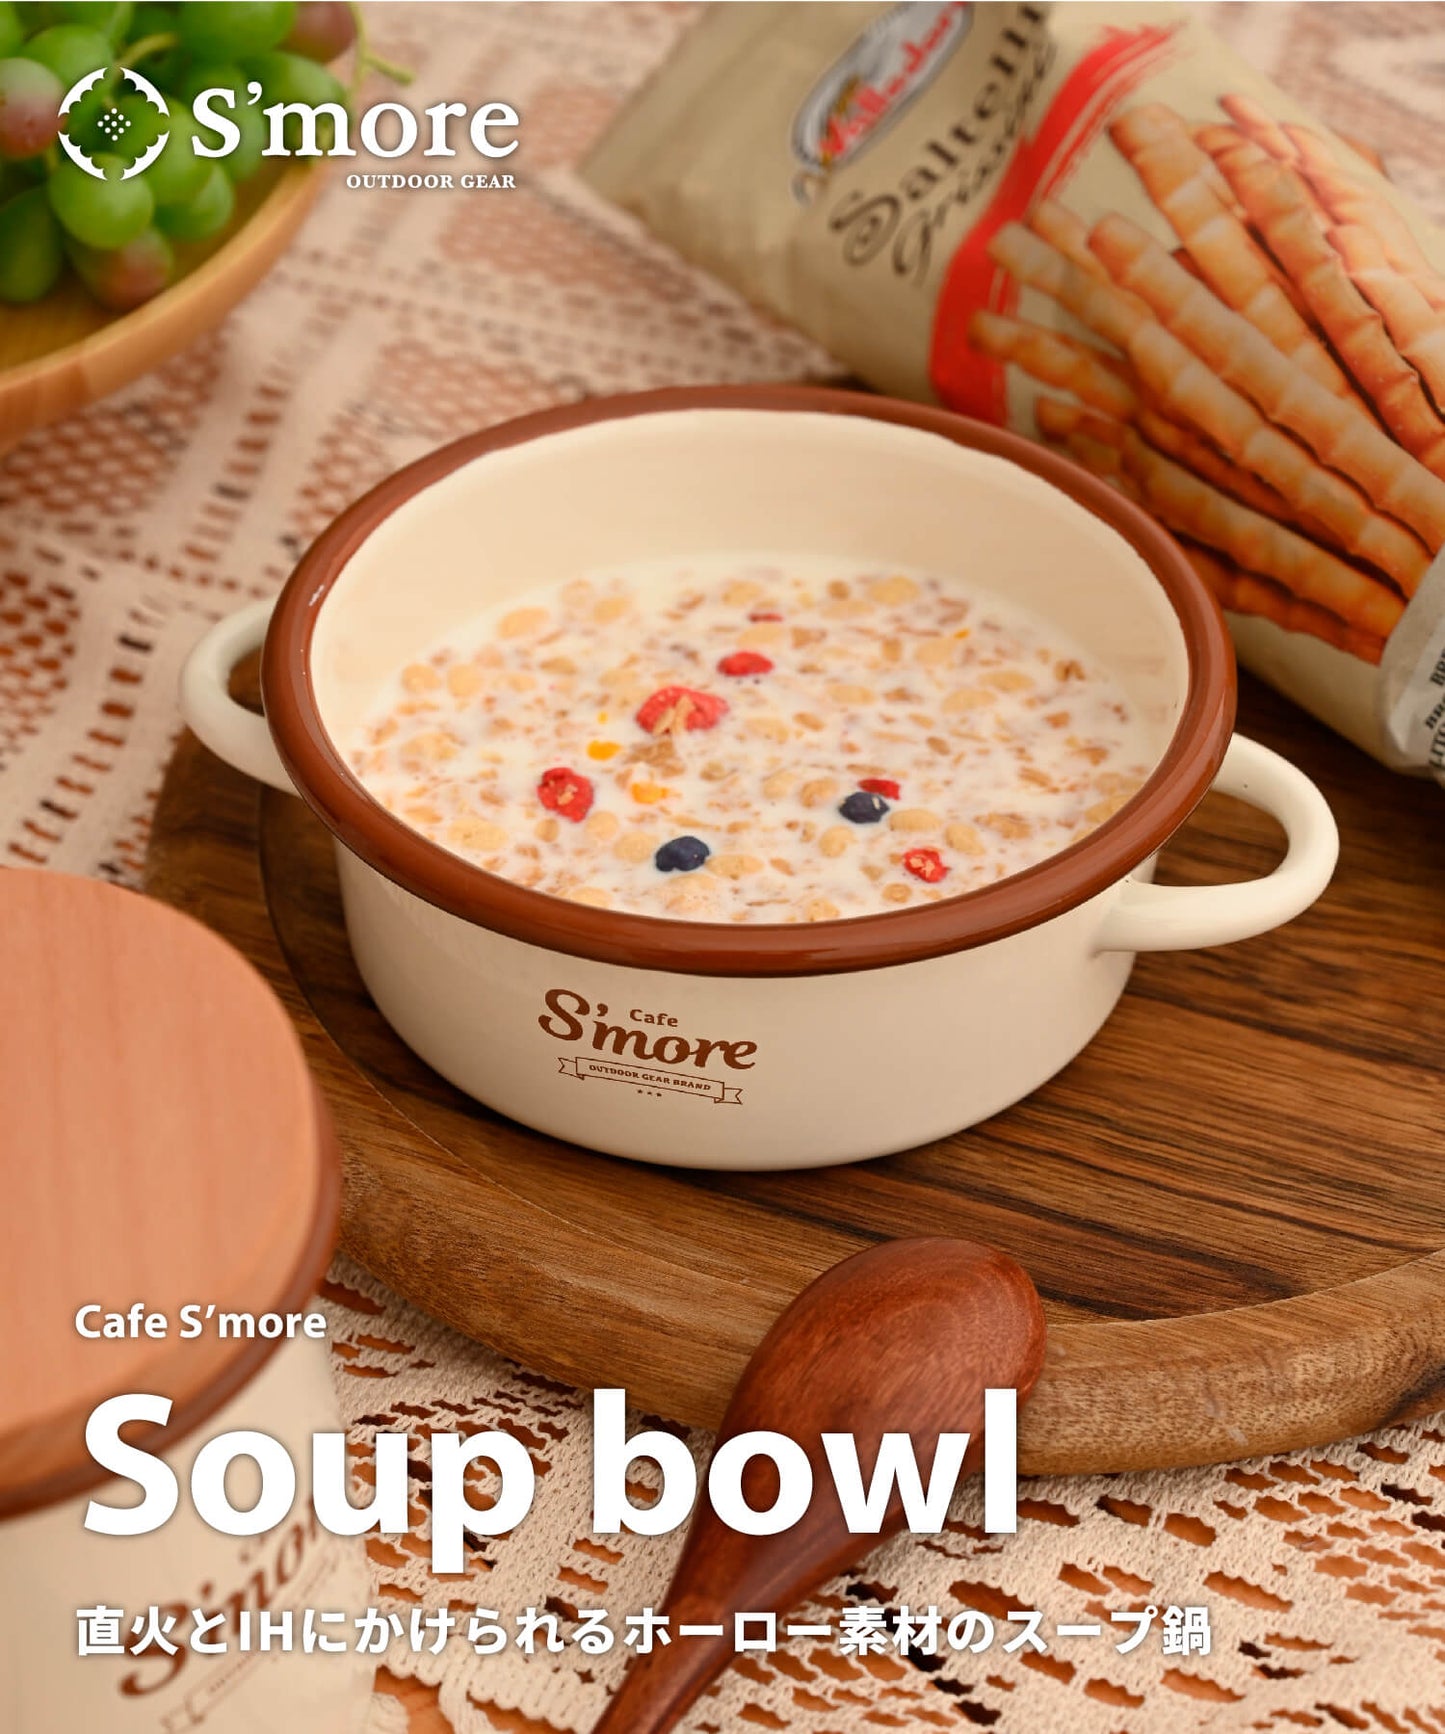 New!! café s'more soup bowl